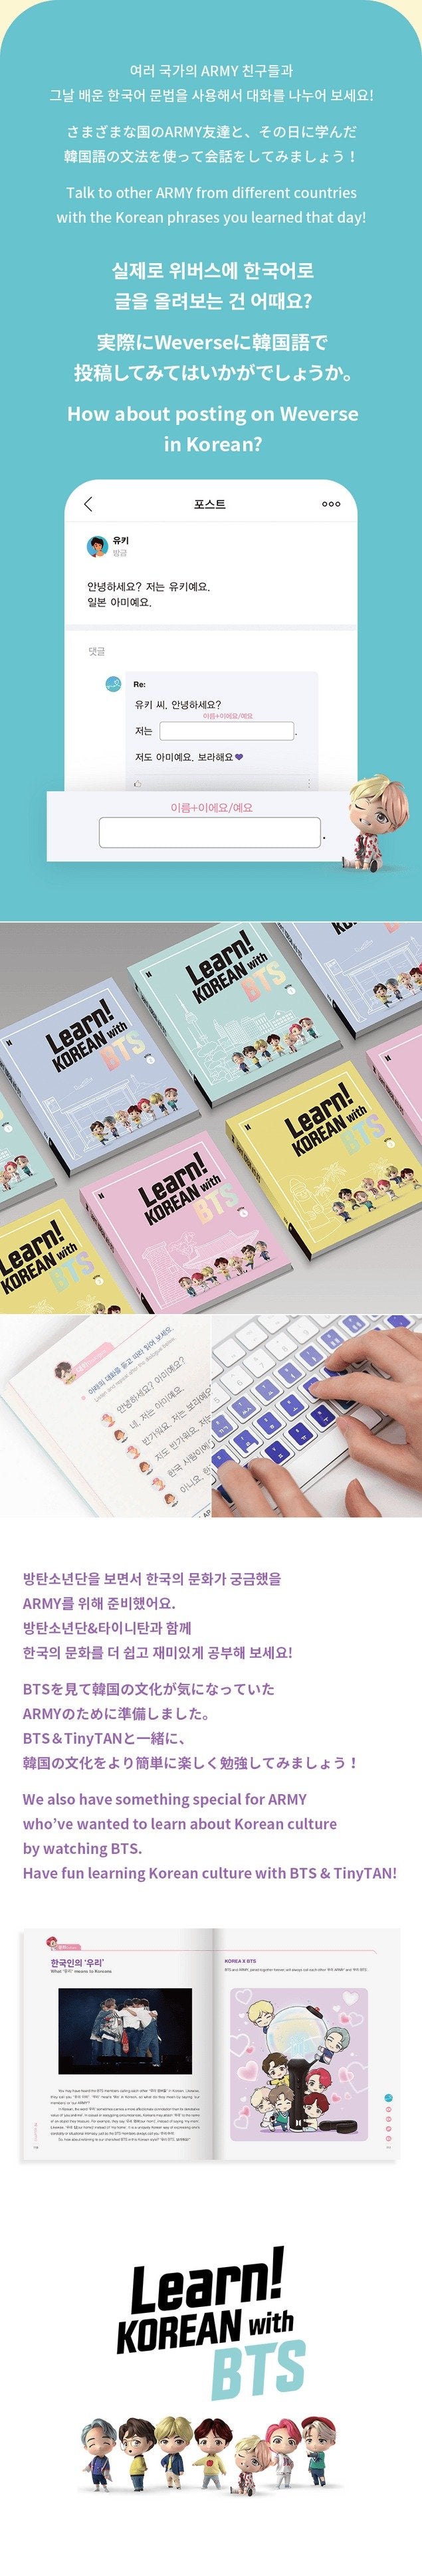 ¡Aprender! Coreano con BTS Global Edition (nuevo paquete)